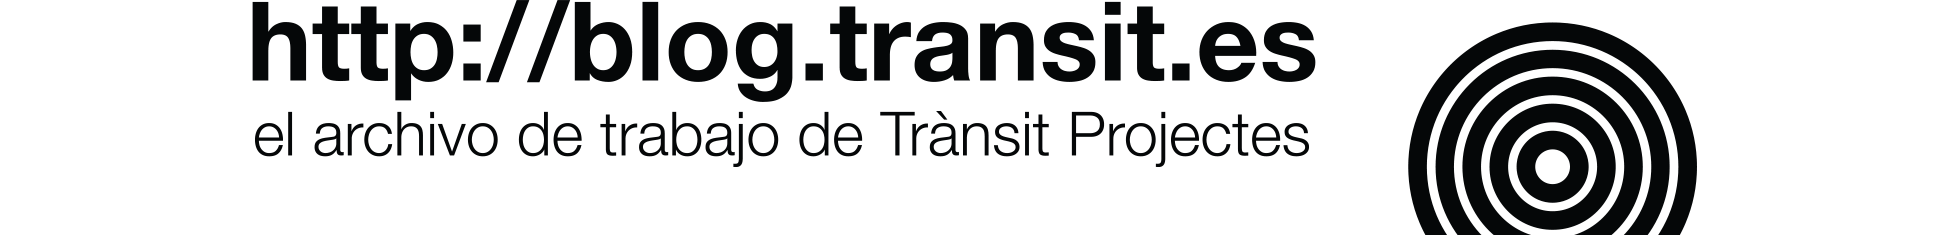 logo_transit_negro2